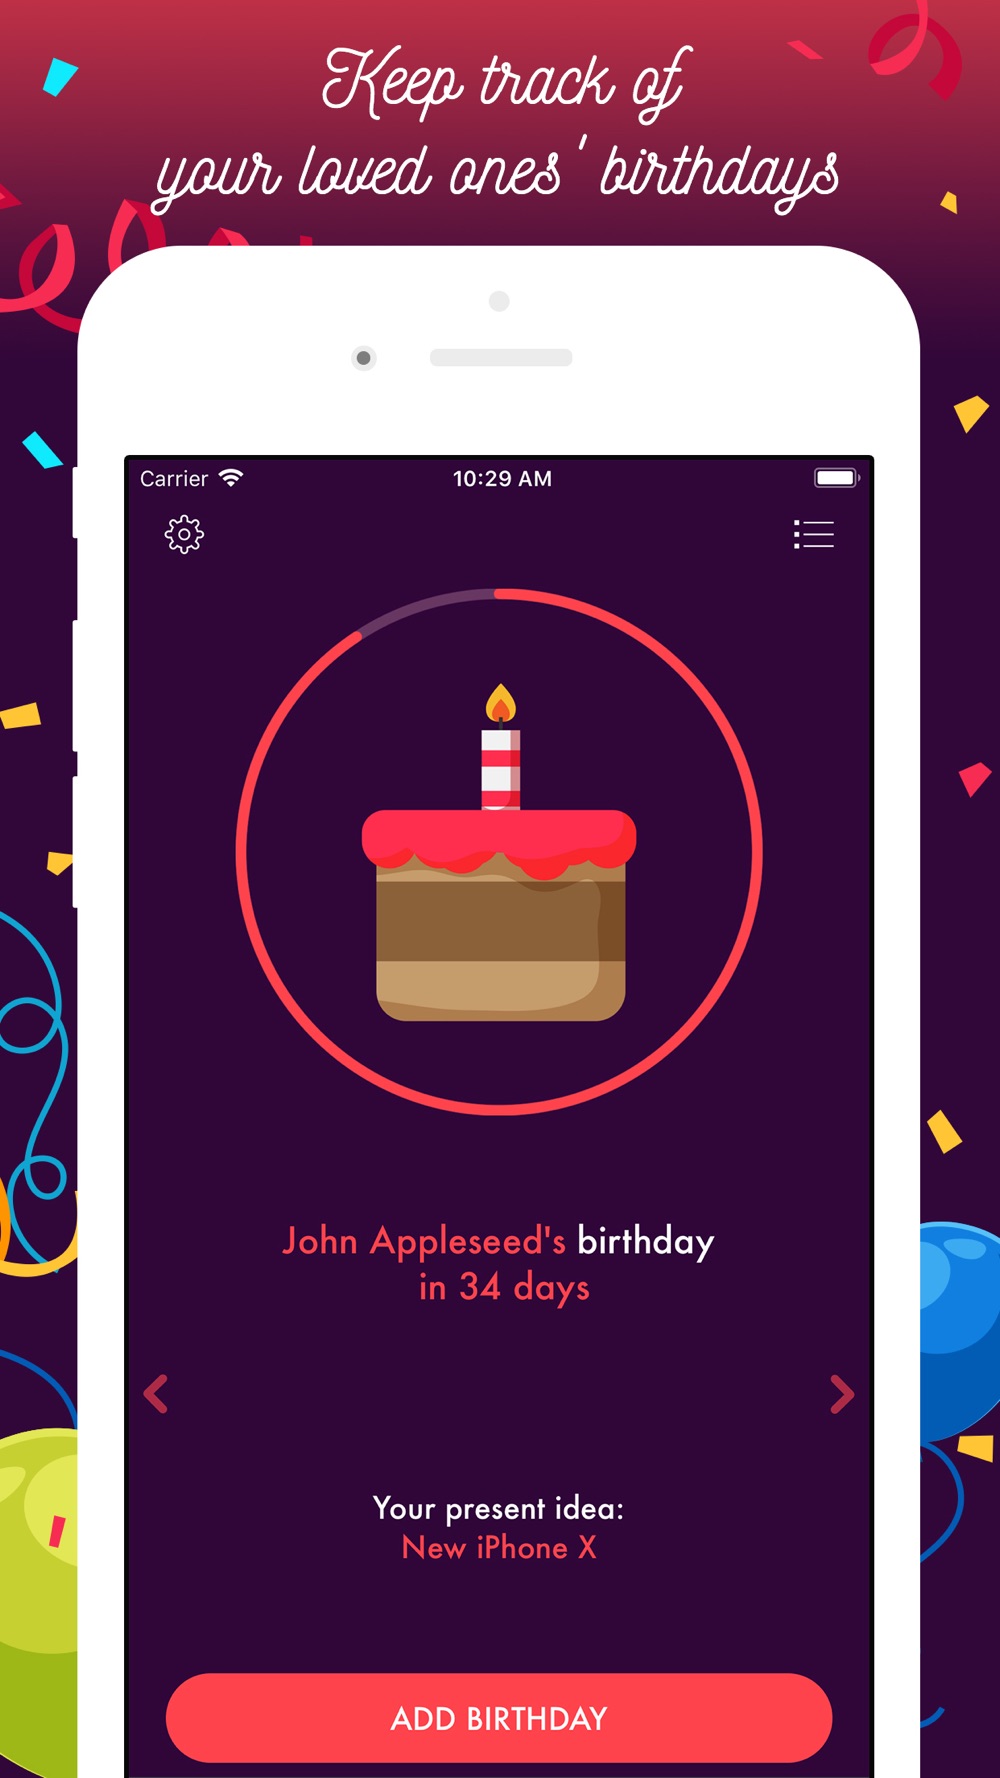 Отсчет до дня рождения на весь экран. Обратный отсчет на день рождения. Обратный отсчёт в Инстаграм до дня рождения. Обратный отсчет до дня рождения. Отсчёт времени до дня рождения.